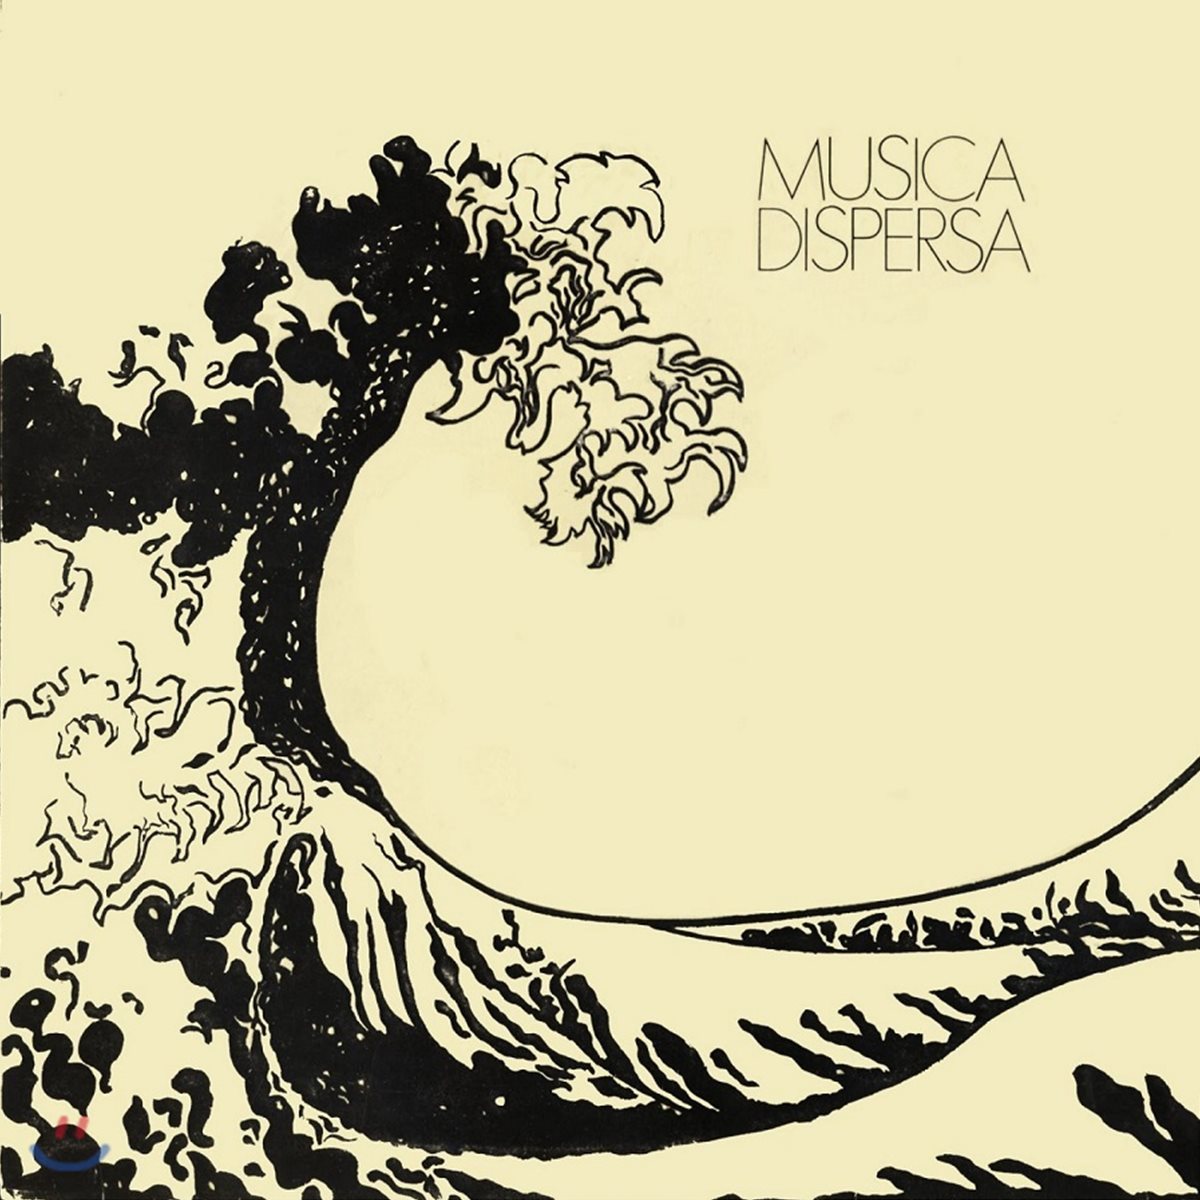 Musica Dispersa (무지카 디스페르사) - Musica Dispersa [LP]